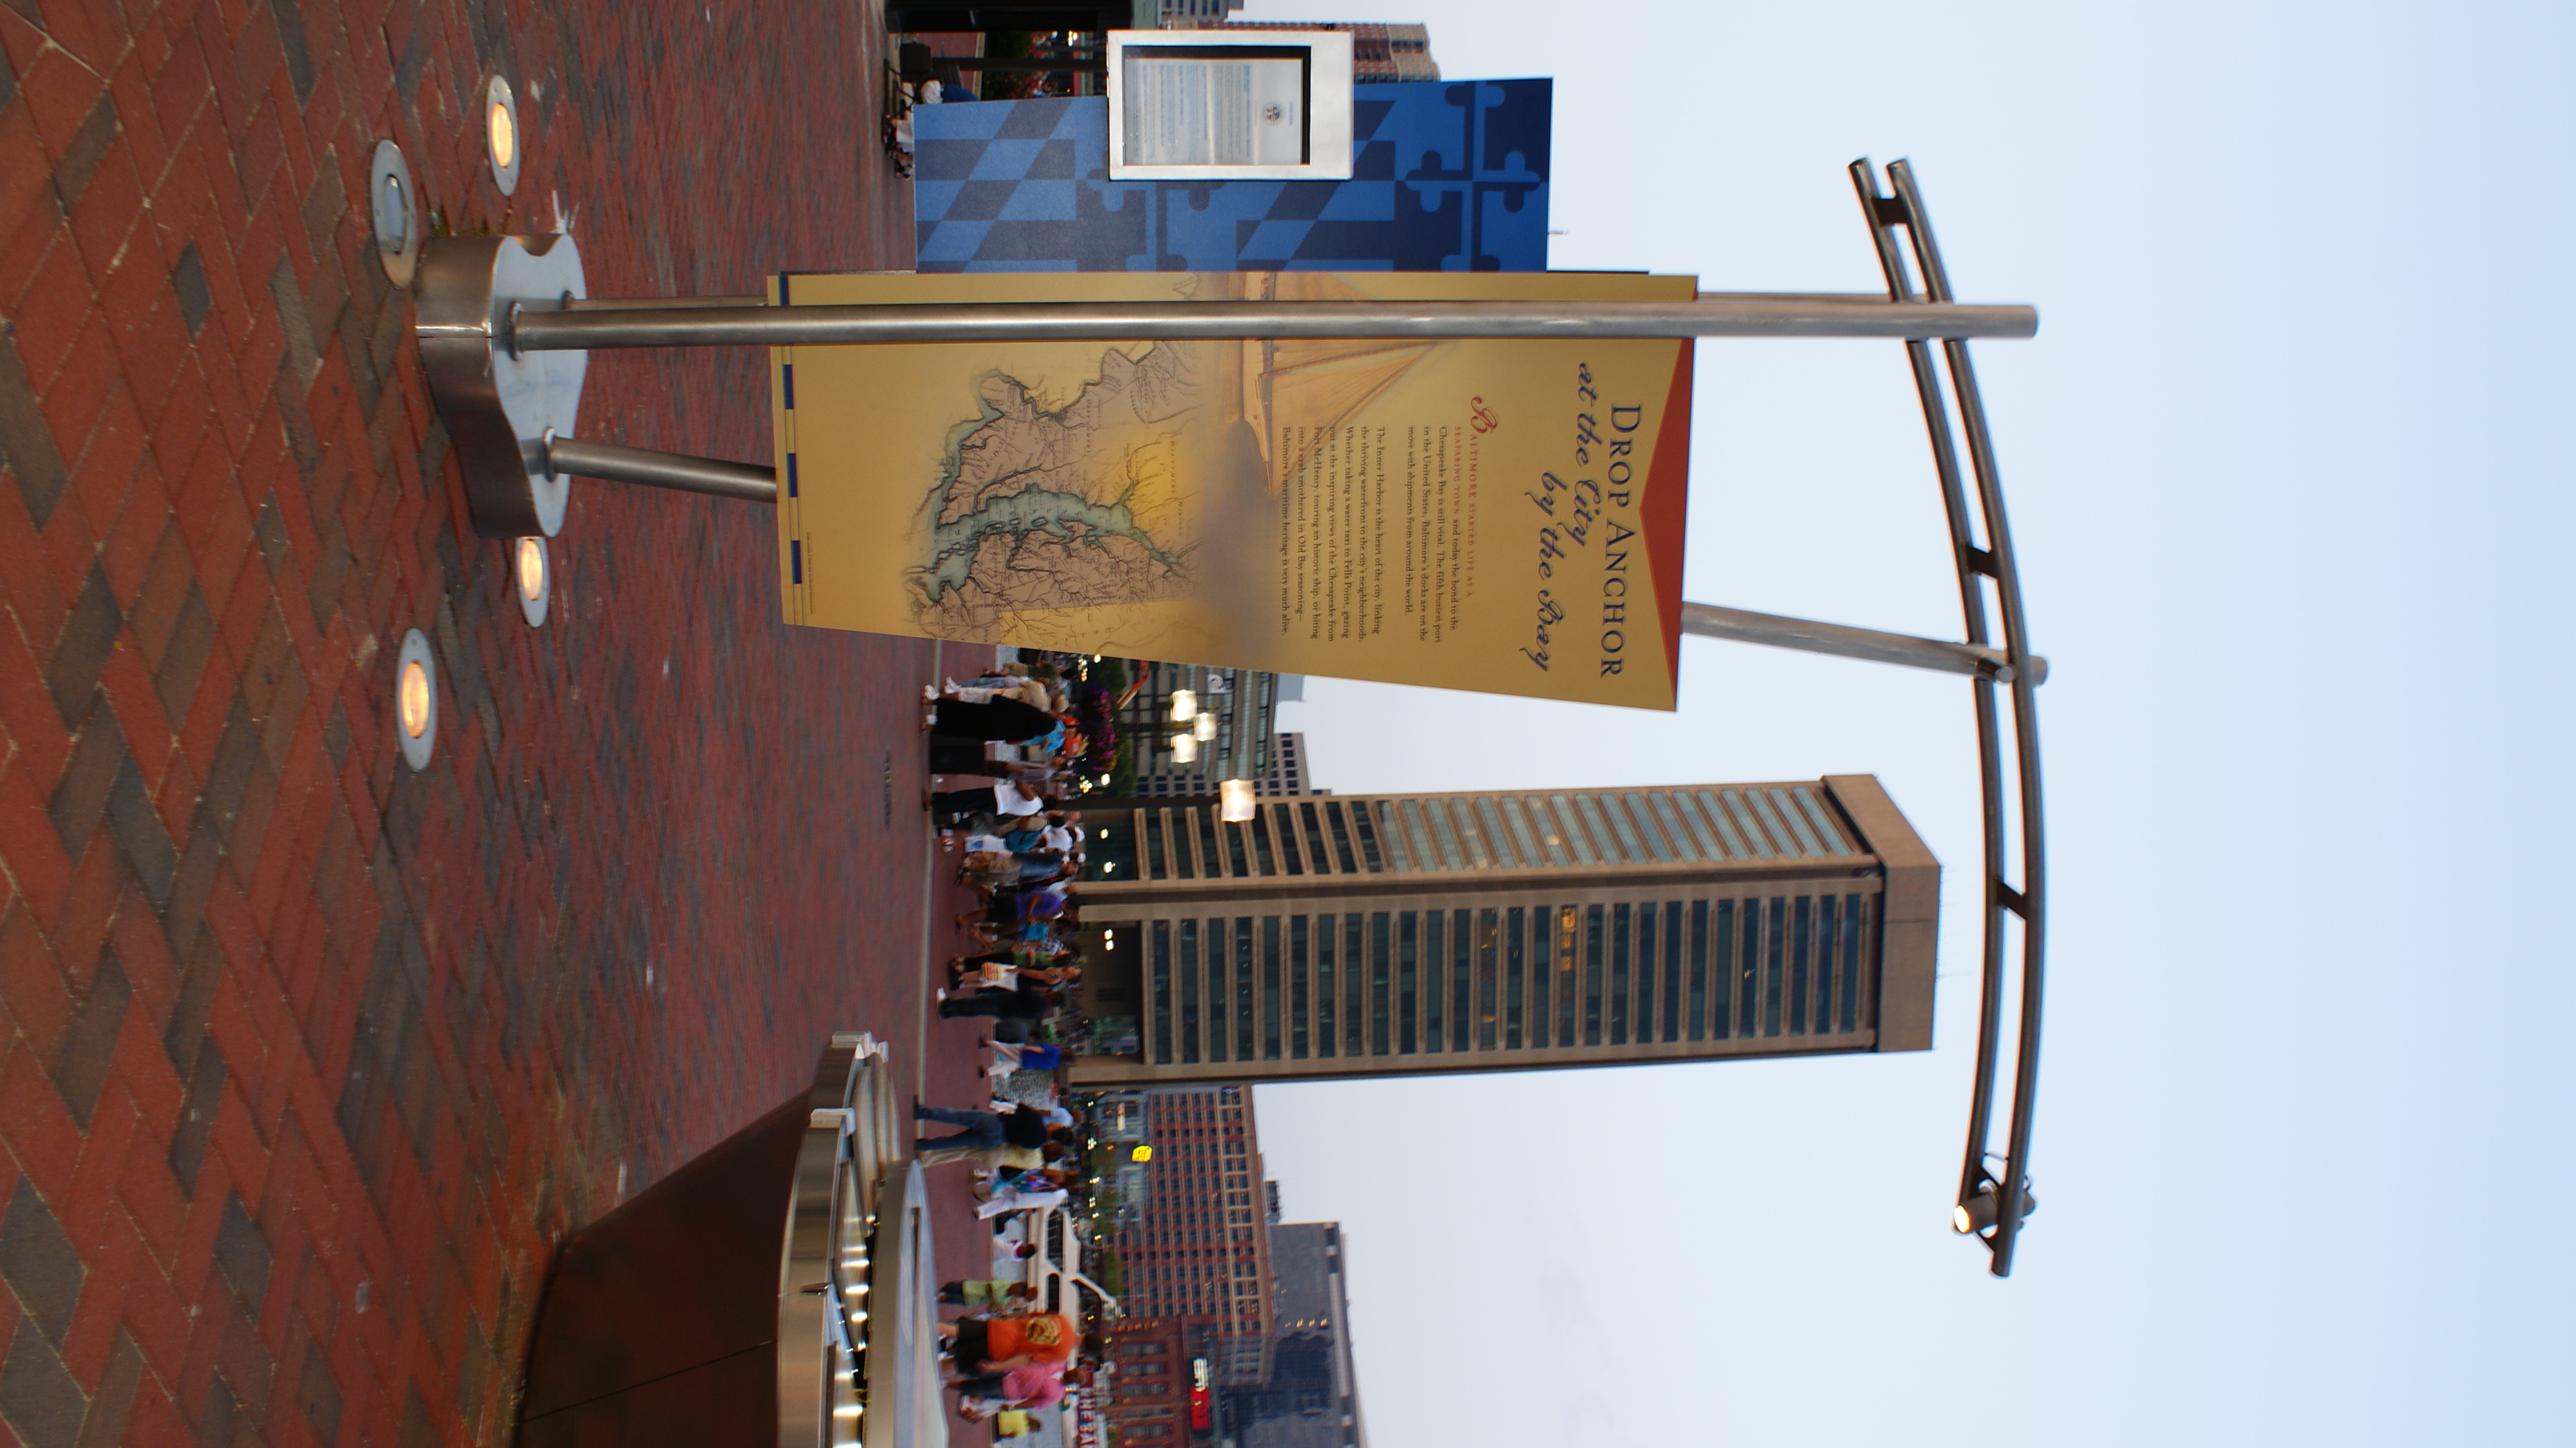 Inner Harbor sign, Baltimore, Buildings, Harbor, Inner, HQ Photo